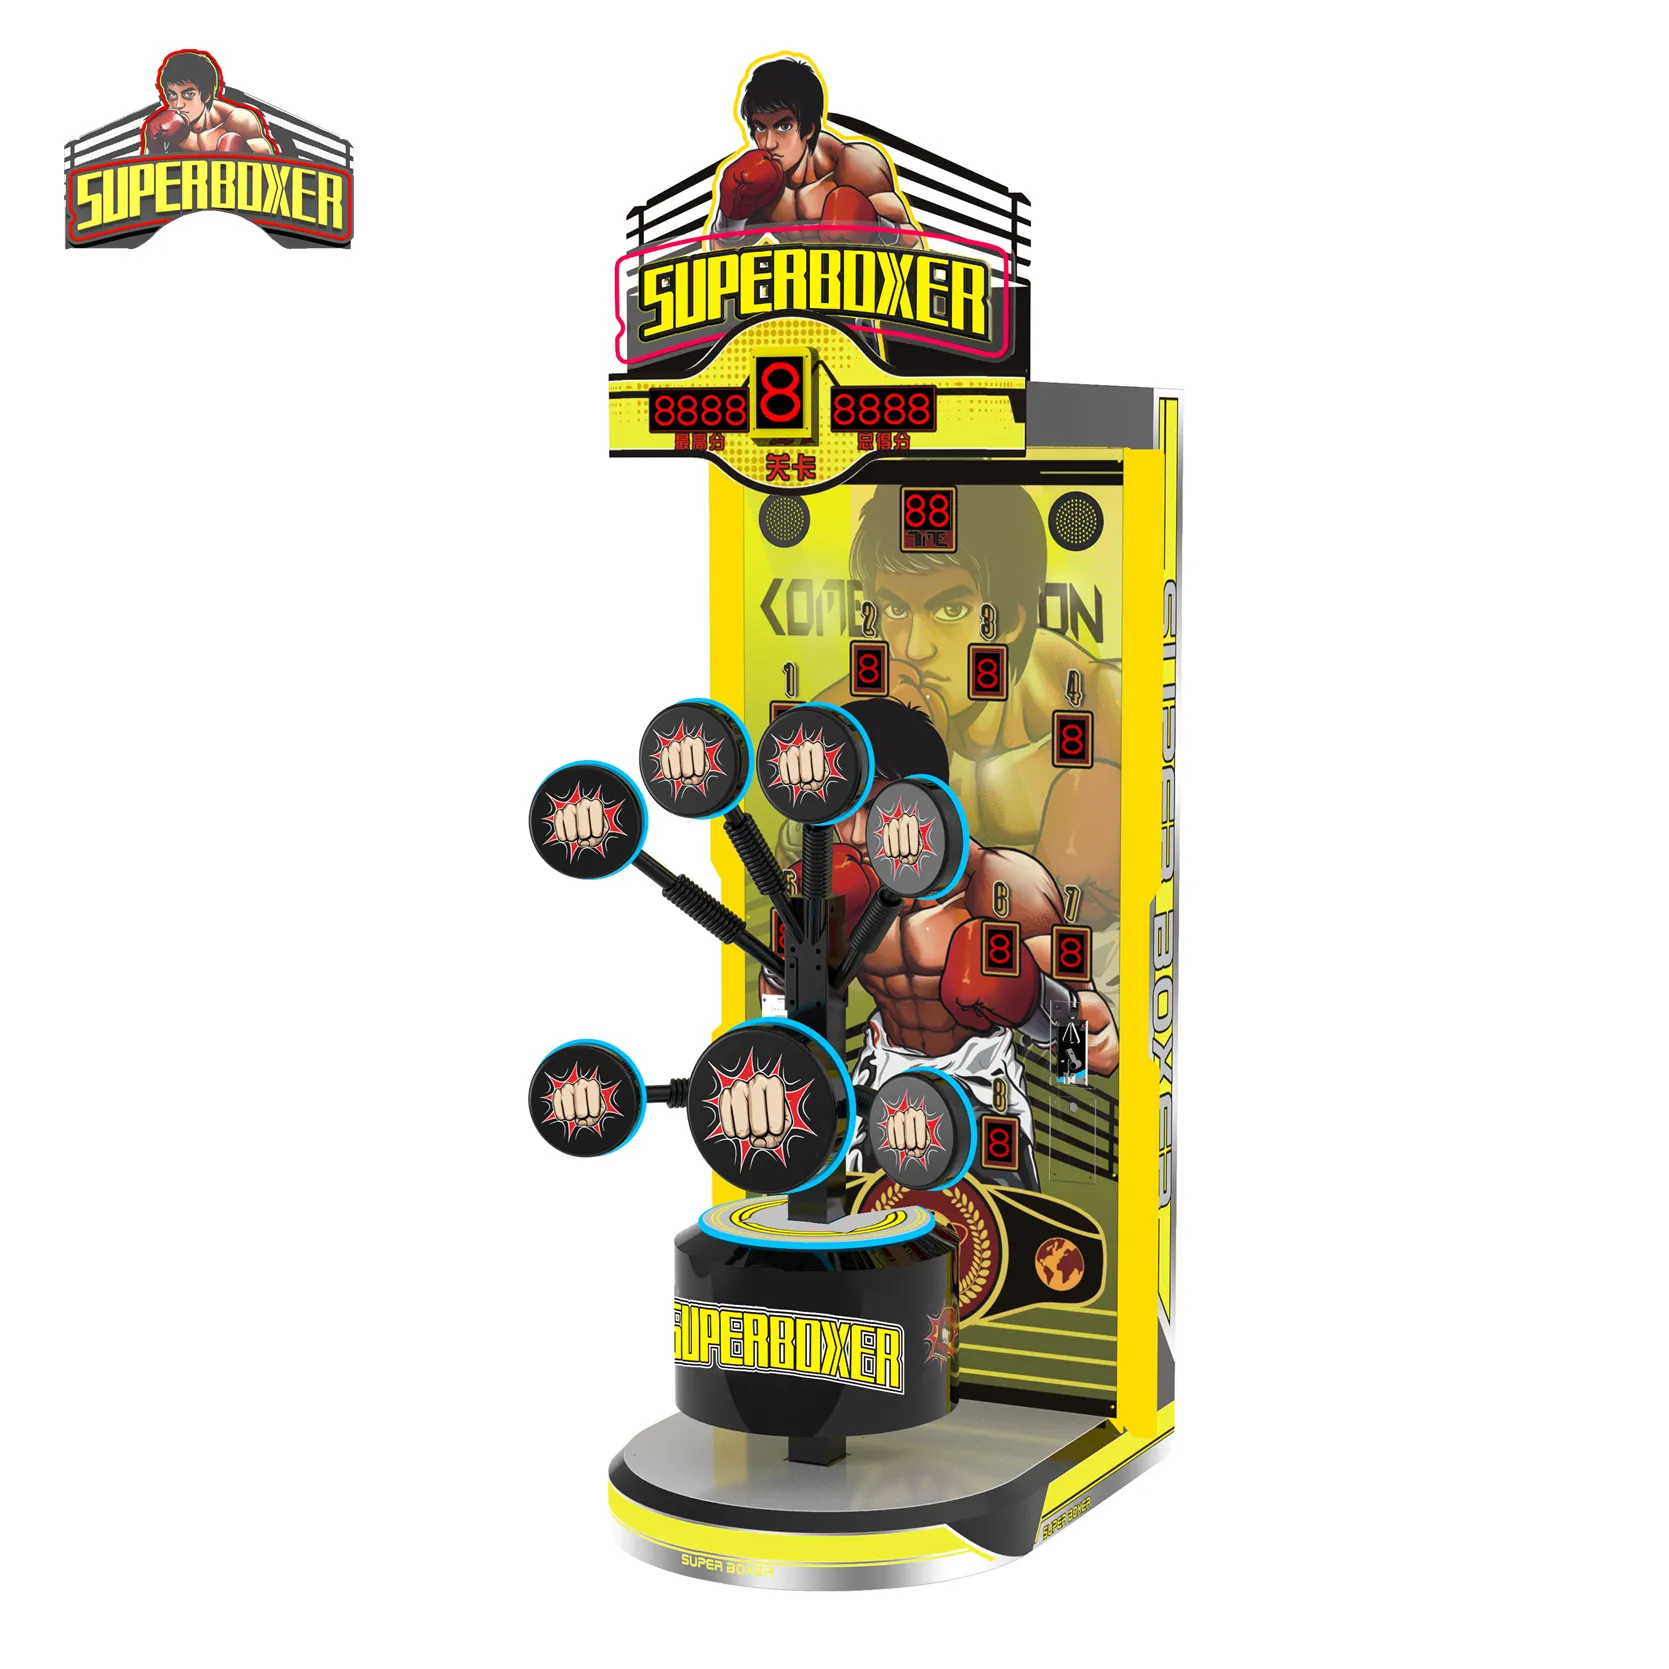 Big punch target boxing game machine, macchina da gioco arcade di boxe elettronica con biglietto per il premio